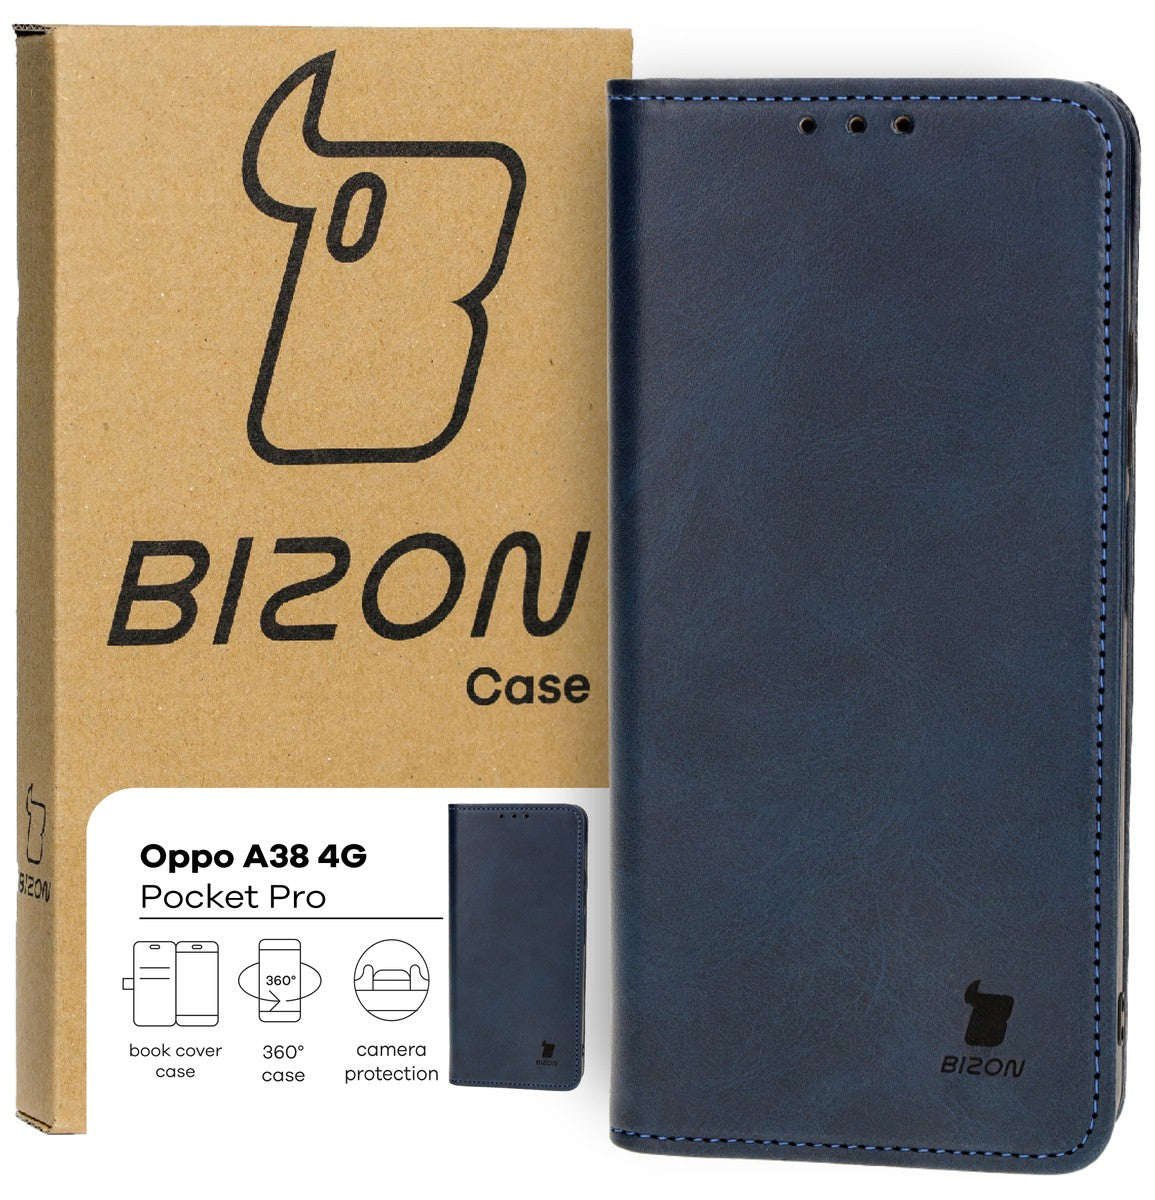 Schutzhülle für Oppo A38 4G, Bizon Case Pocket Pro, Dunkelblau